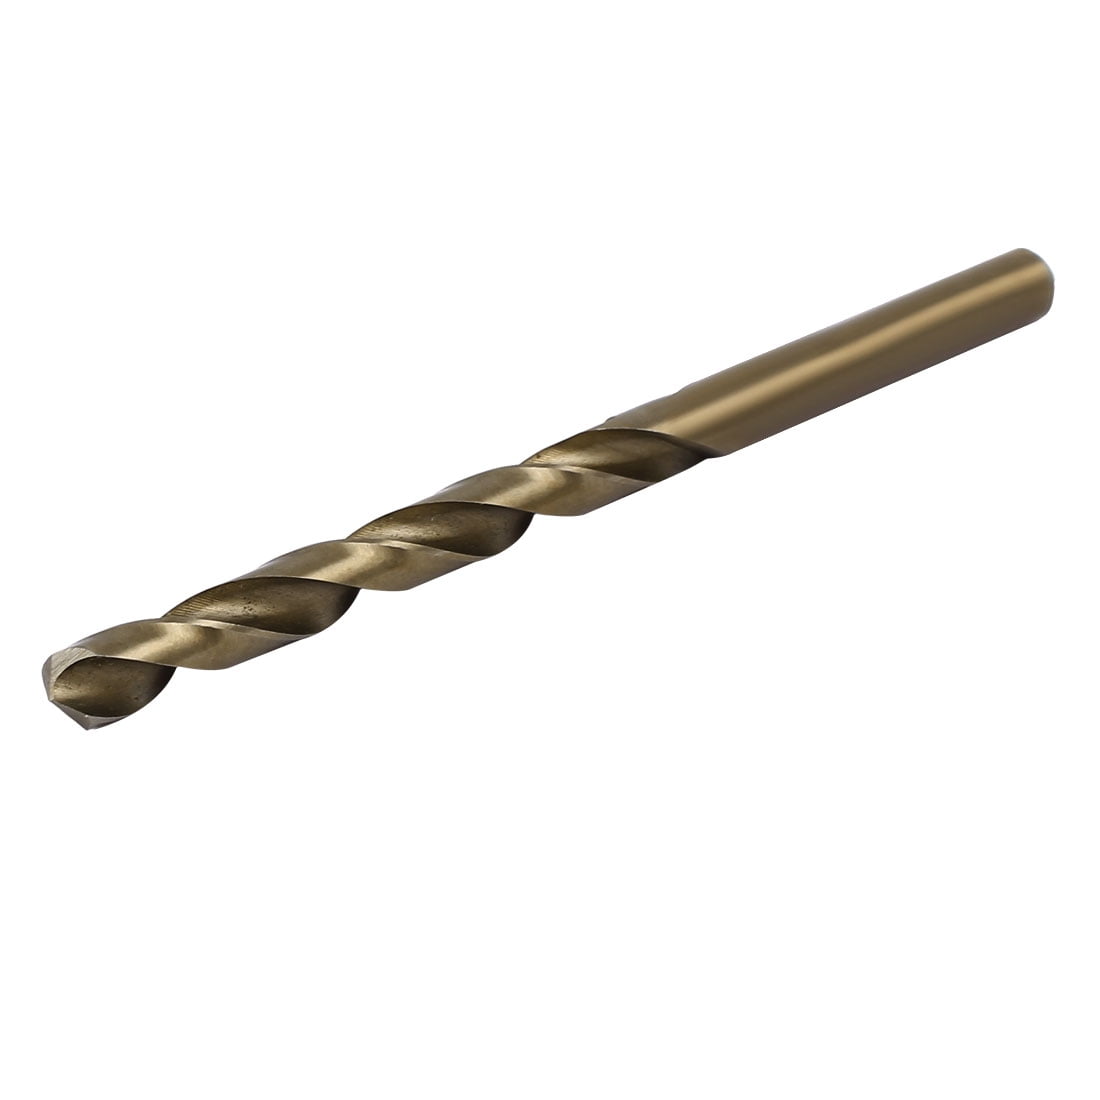 6.7mm Drilling Dia Straight Shank HSS Cobalt Metric Twist Drill Bit Rotary Tool